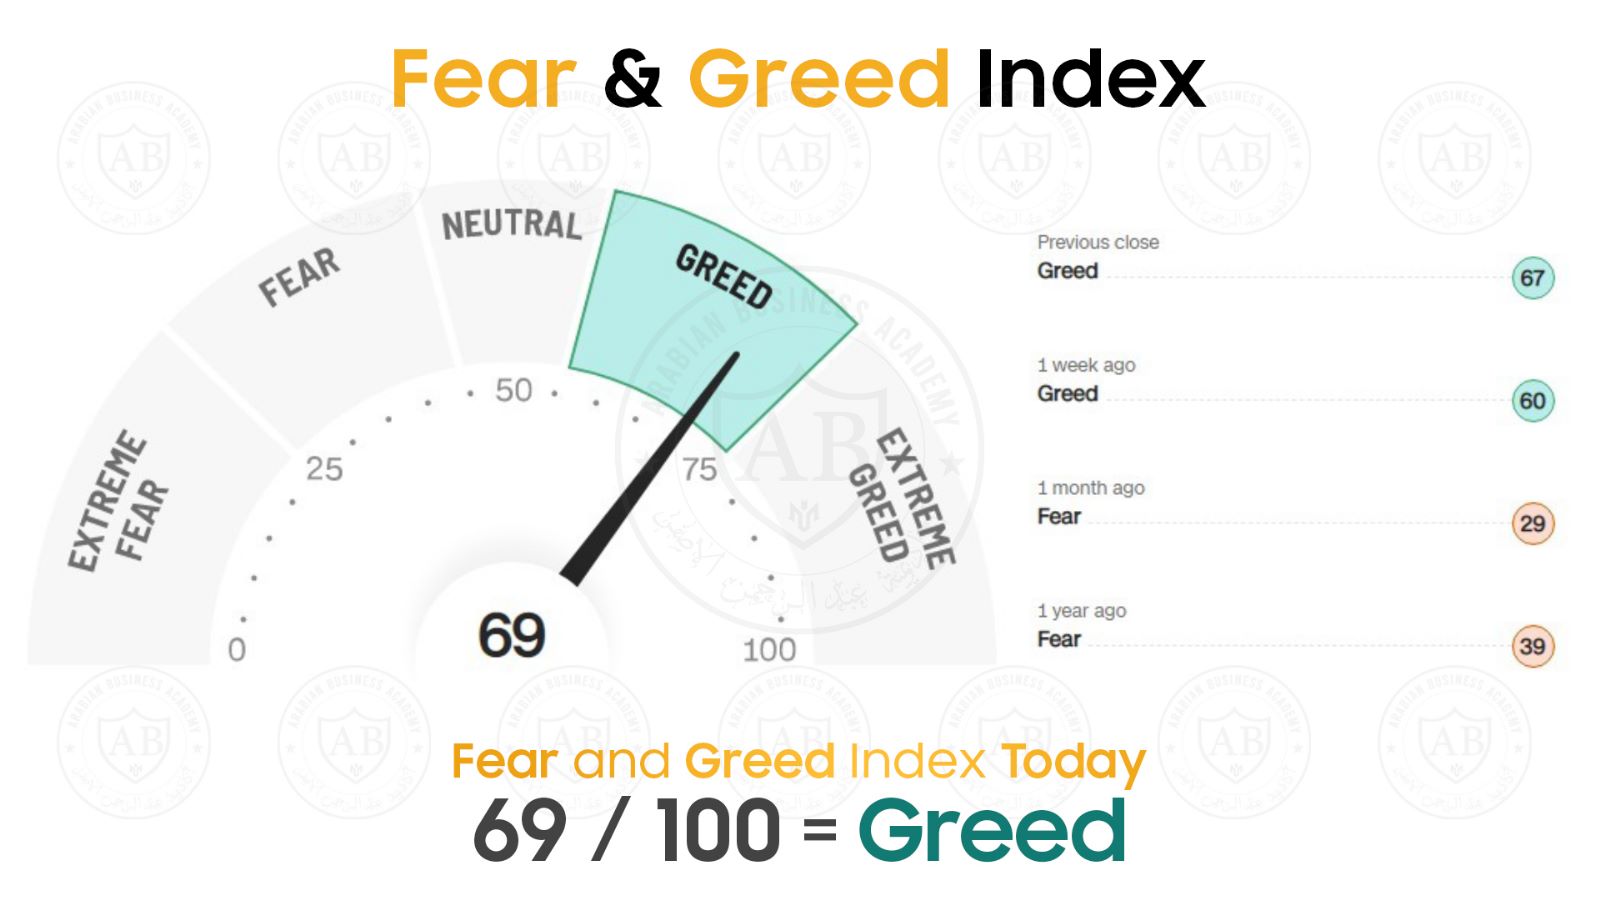 مؤشر  Fear and Greed  في أسواق الأسهم يشير  الى 69/100  لجلسة اليوم